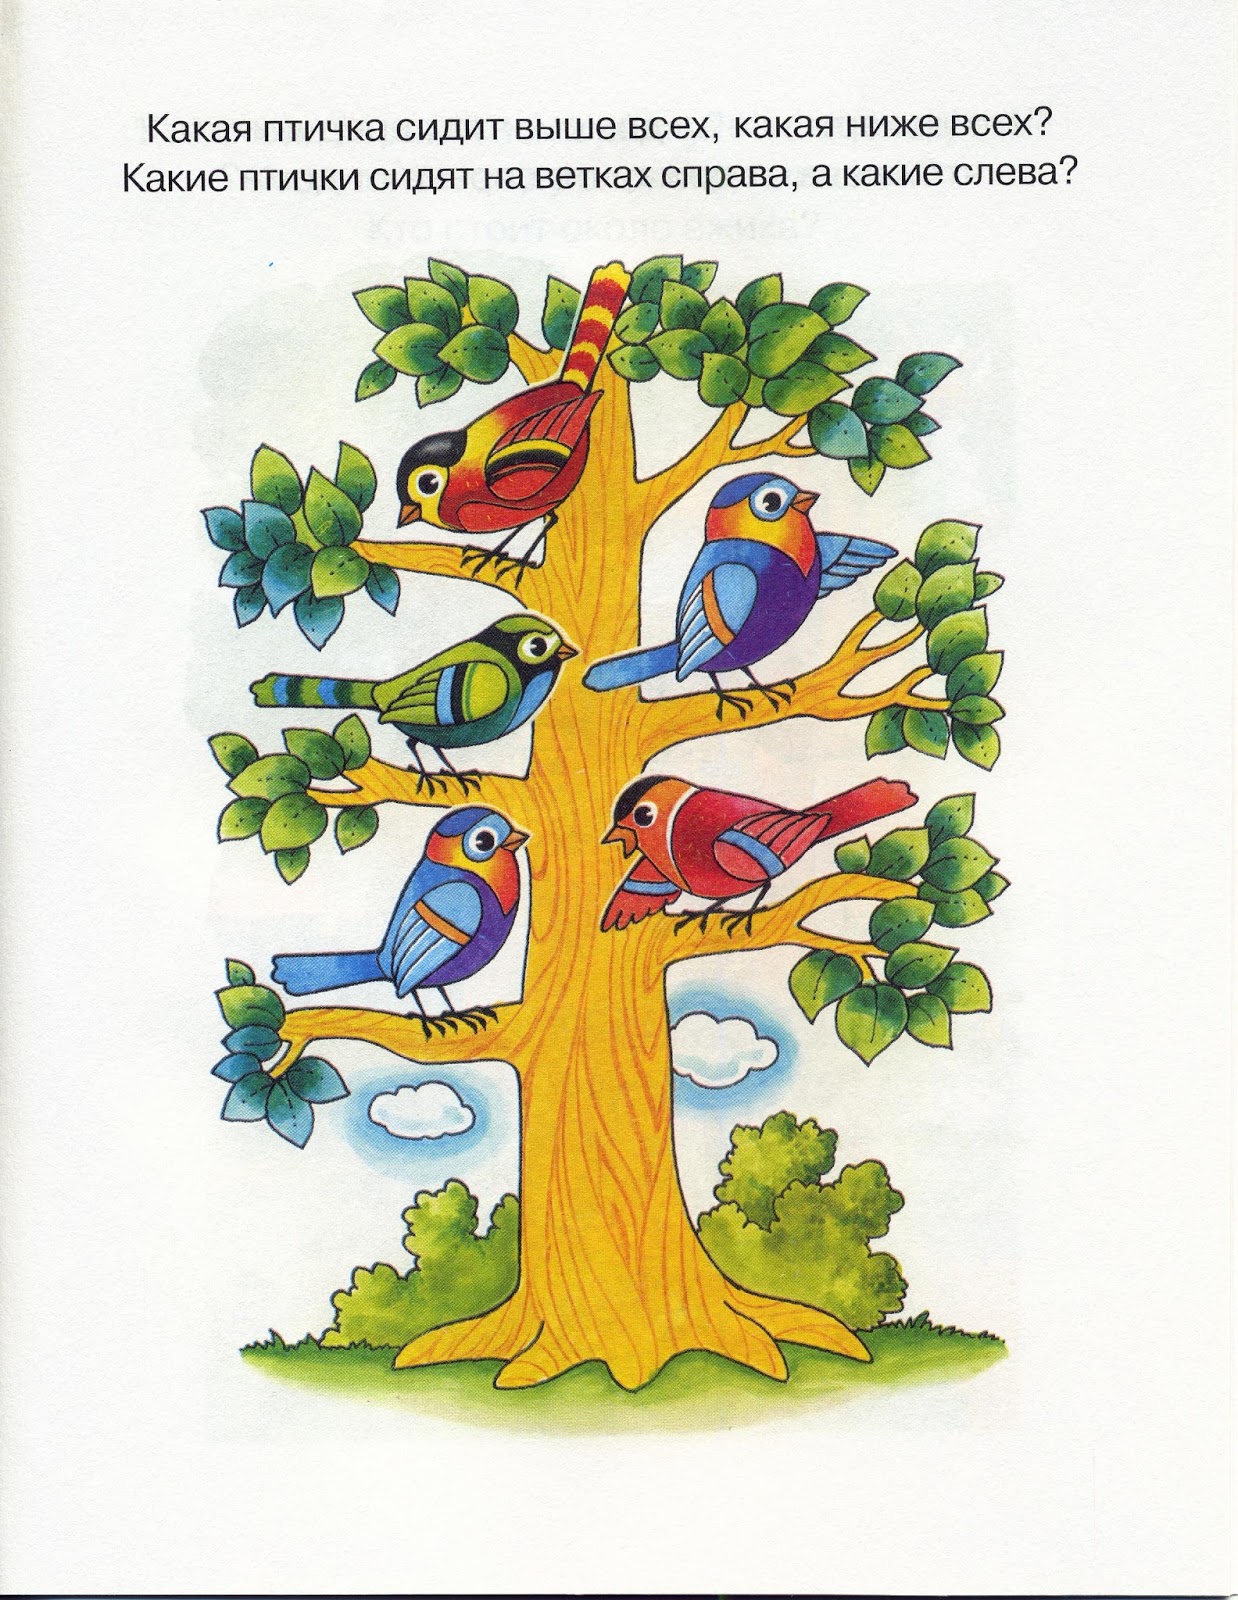 Сколько птиц сидит на дереве. Ориентировкавпостранстве. Ориентировка в пространстве для детей. Ориентация в пространстве для детей. Задания на ориентировку в пространстве.